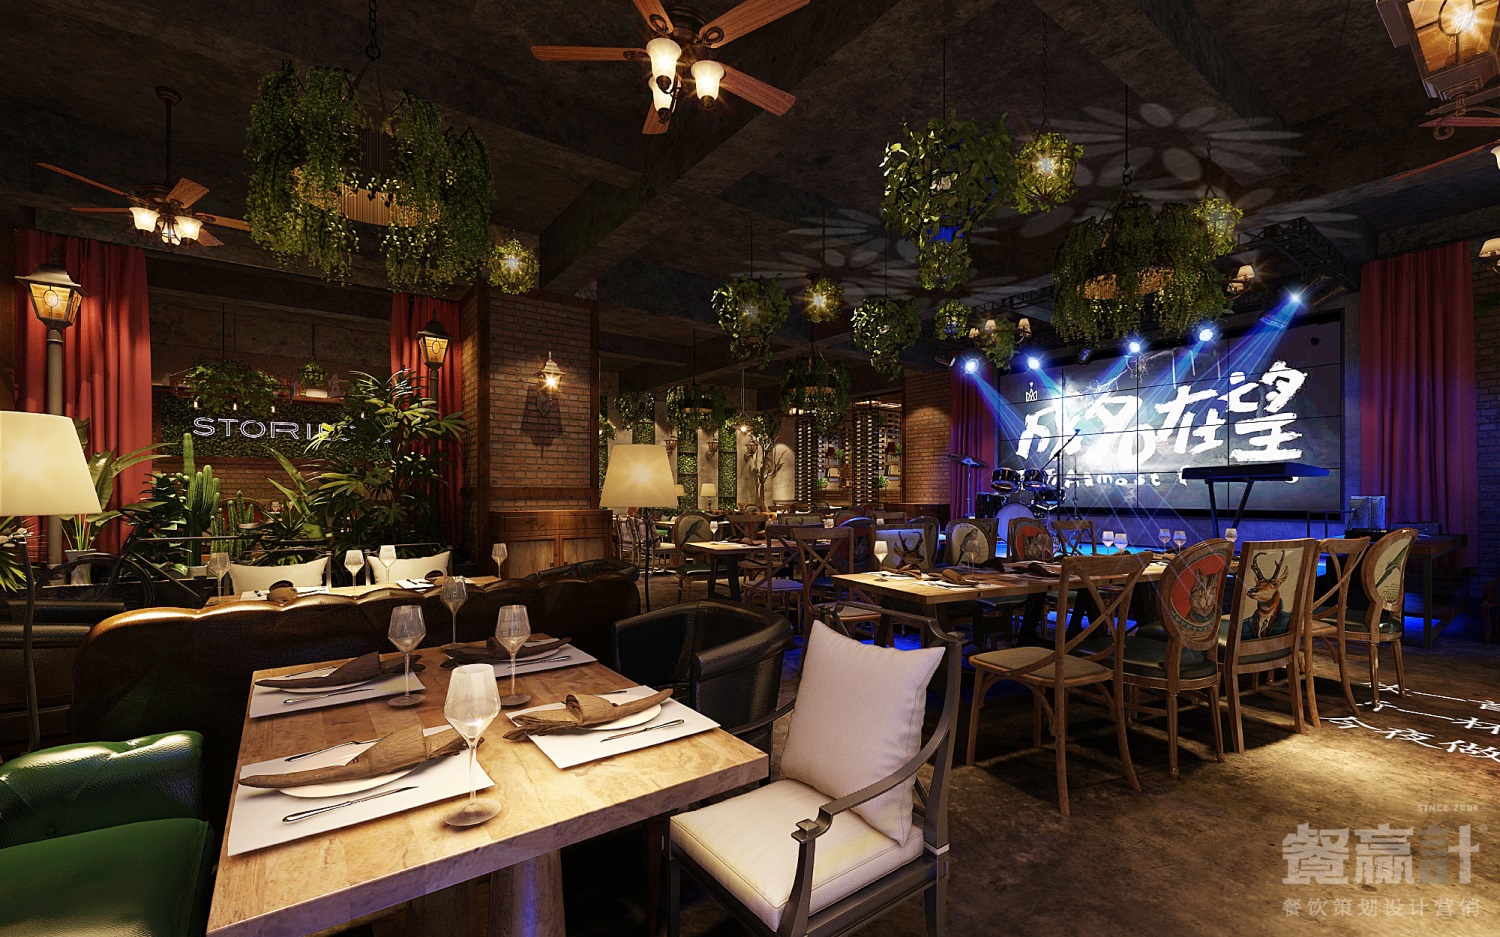 城里故事东莞主题音乐餐厅餐饮品牌内部空间设计